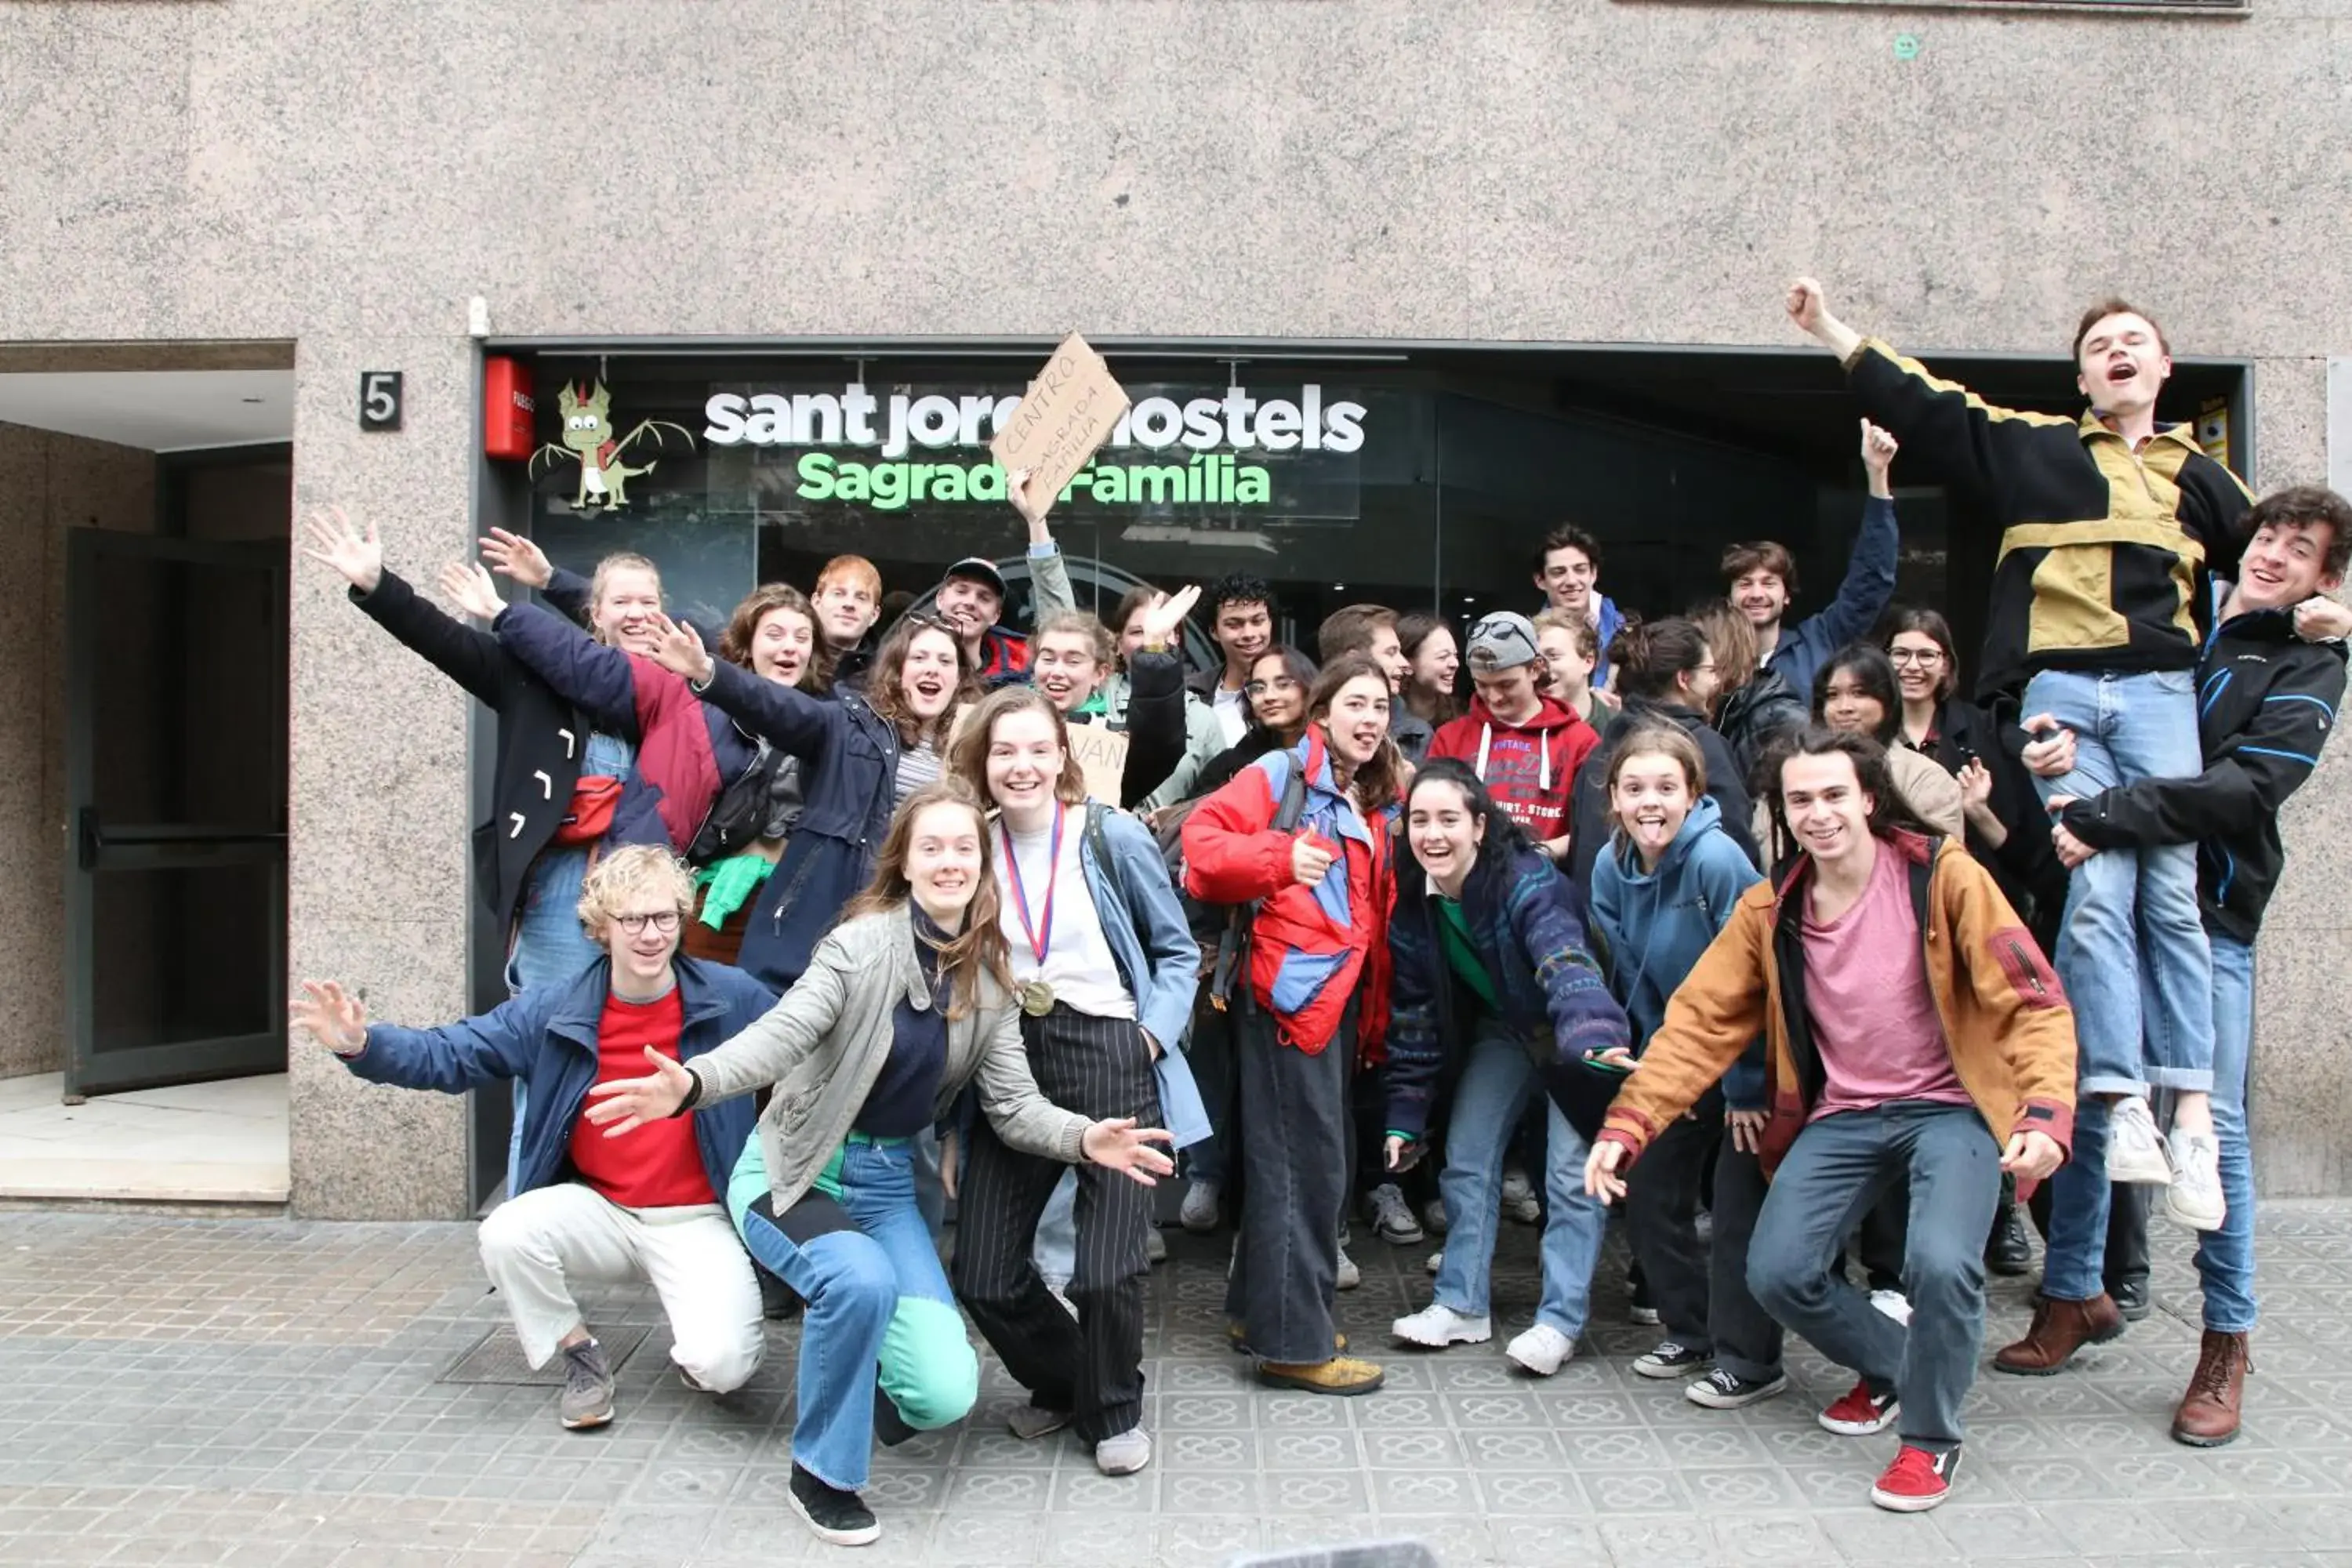 group of guests in Sant Jordi Hostels Sagrada Familia